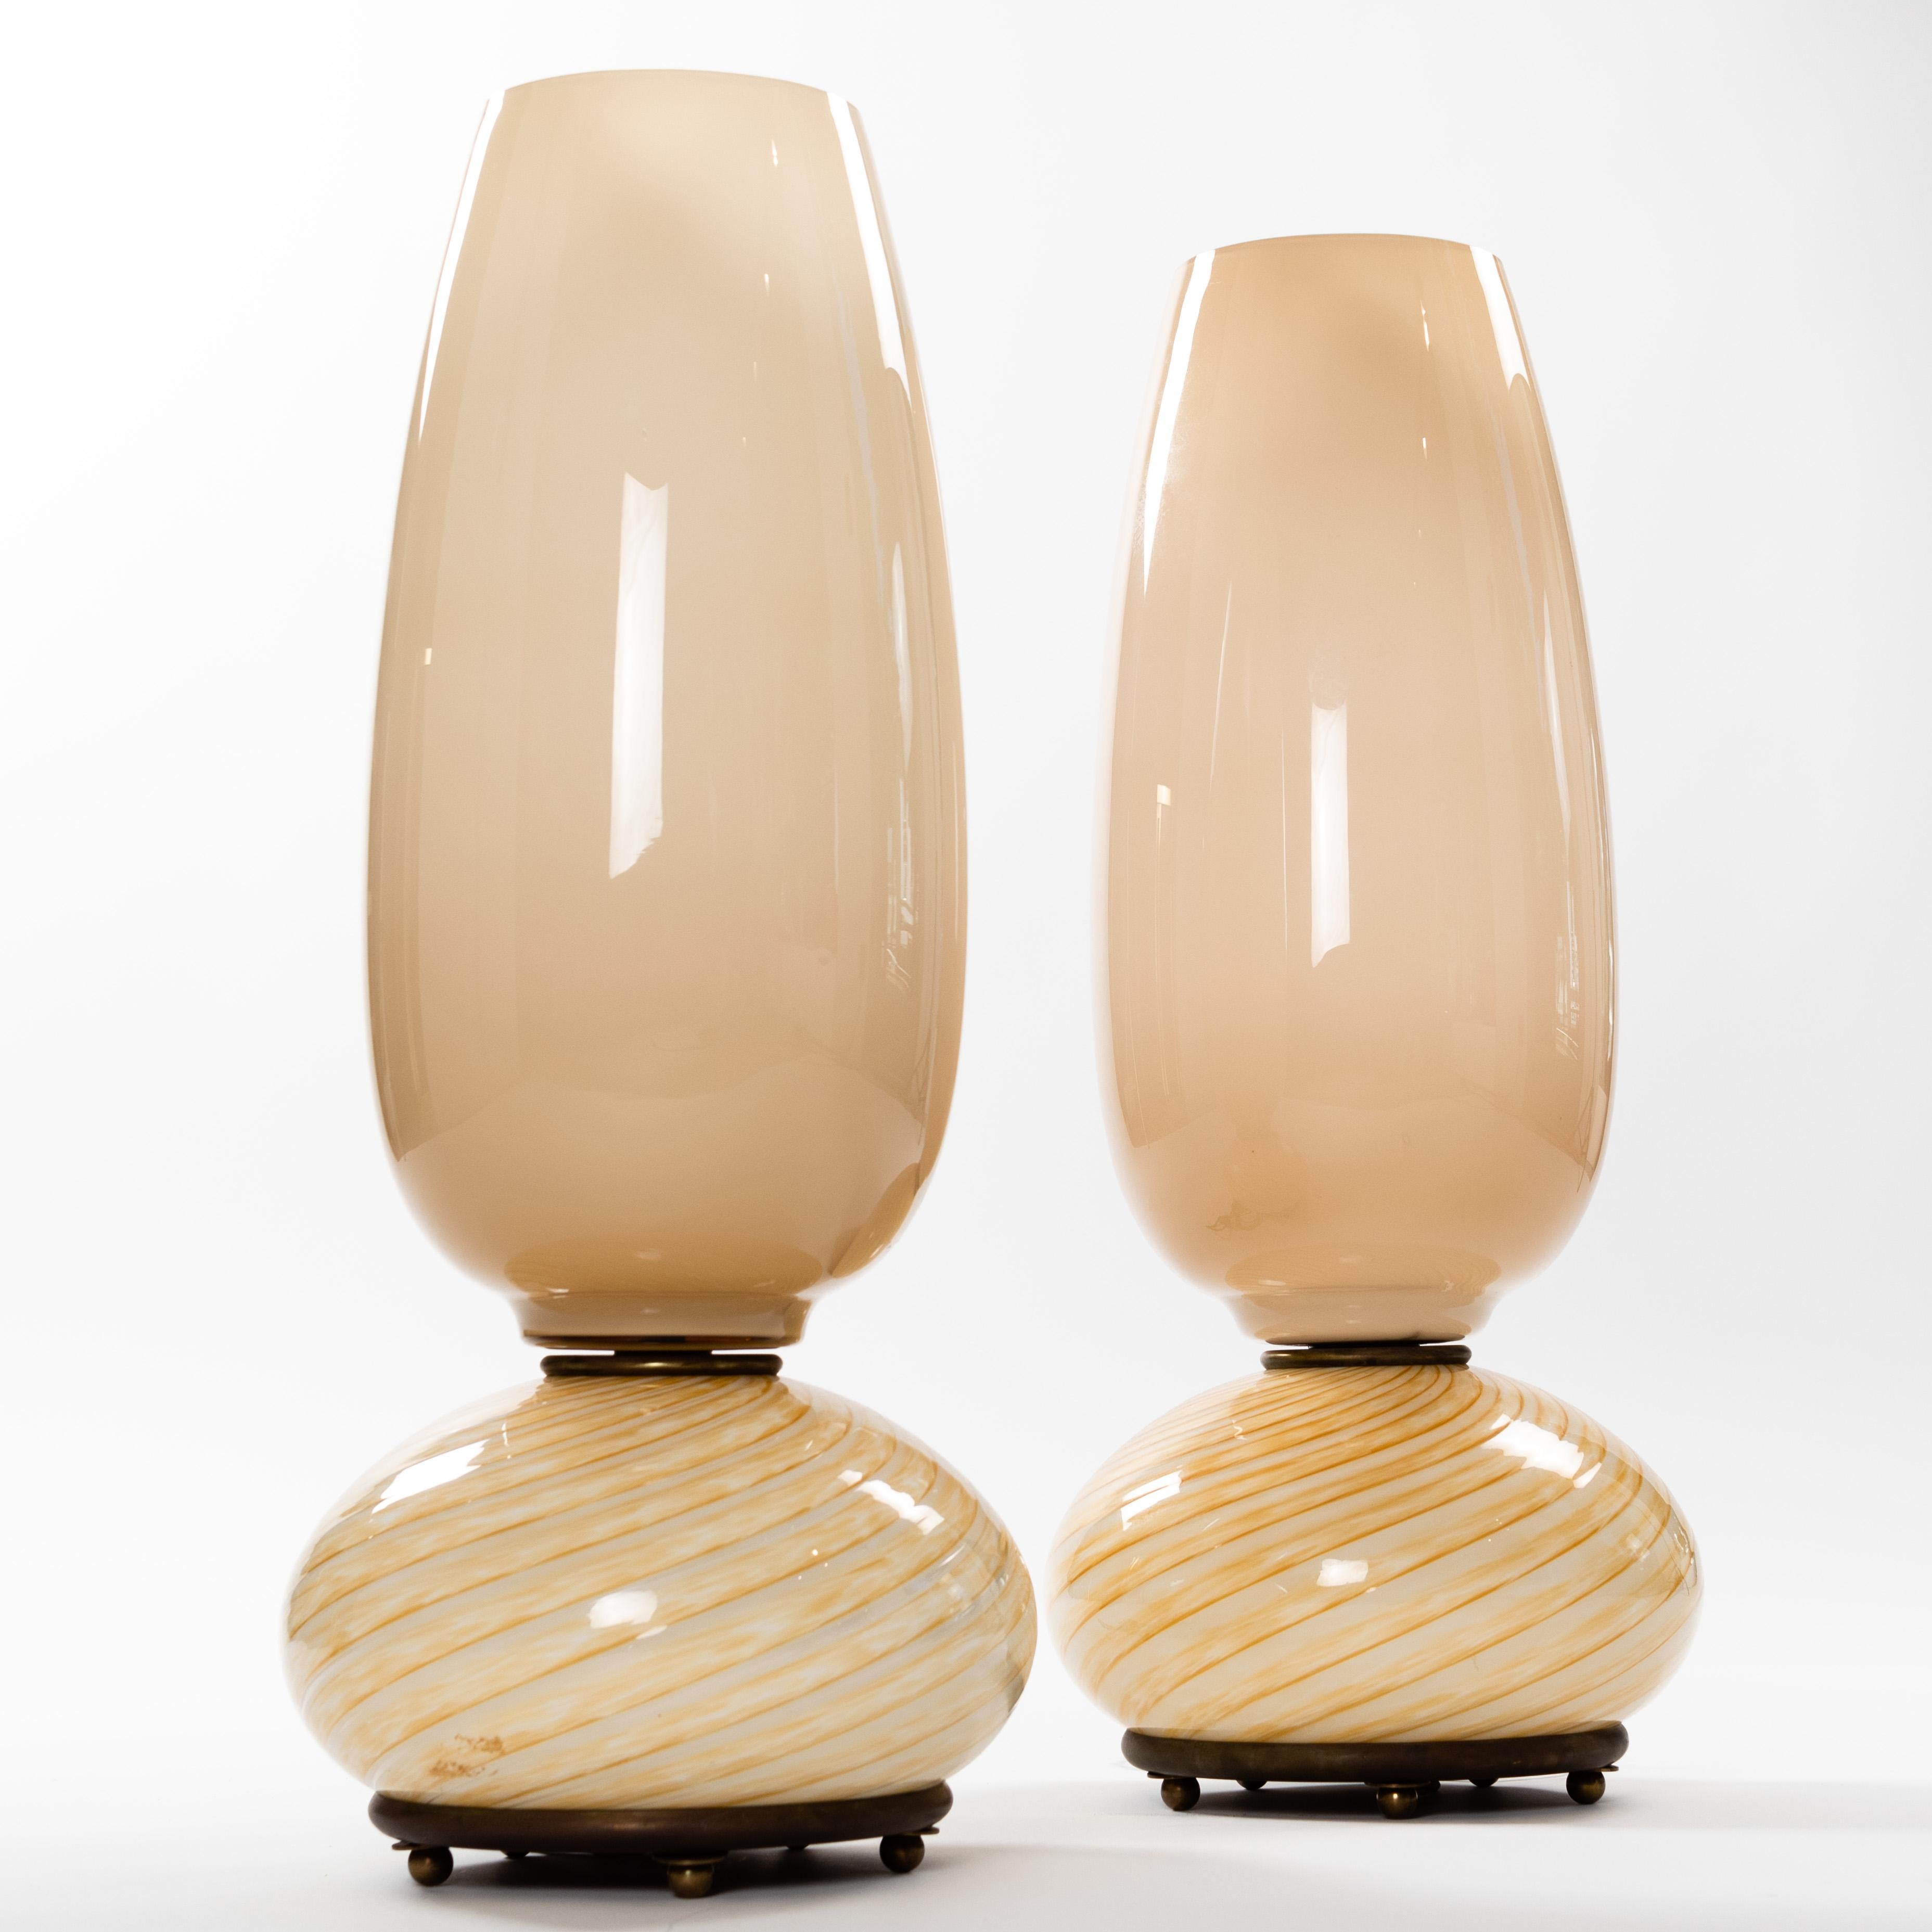 Ein wunderbares und seltenes Paar Venini-Tischlampen aus den späten 1970er Jahren.
Zartes, kamelfarbenes Muranoglas verleiht den Objekten einen sanften Ton. 
Der spiralförmige Glassockel ruht auf einer Bronzeplatte mit kleinen Bronzefüßen. Das